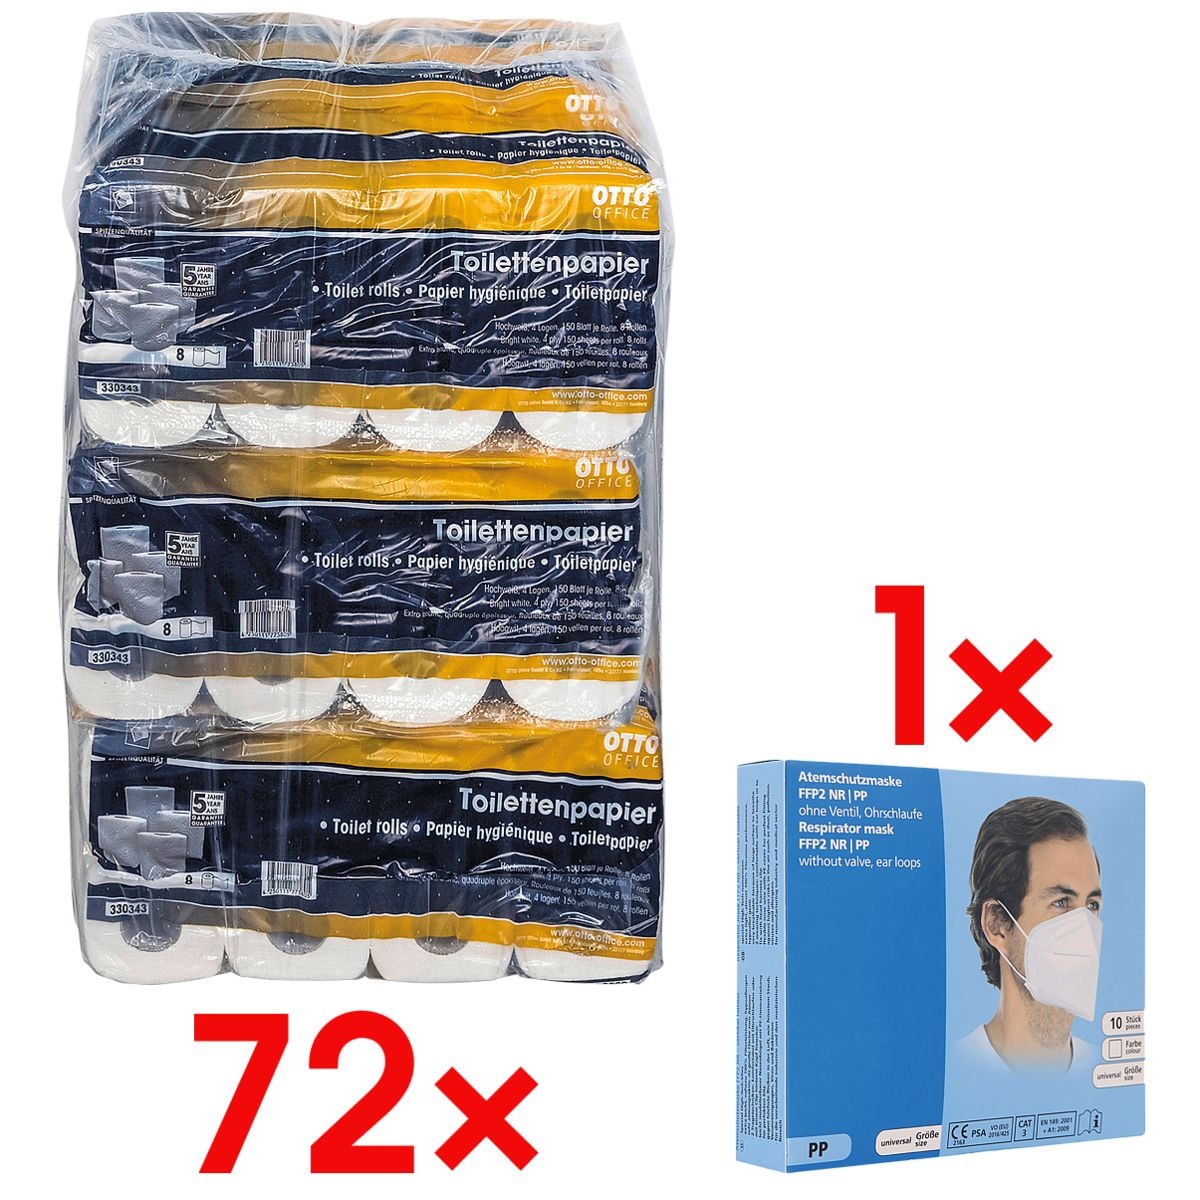 Toiletpapier Premium 4-laags - 72 rollen incl. 10 adembeschermingsmaskers FFP2